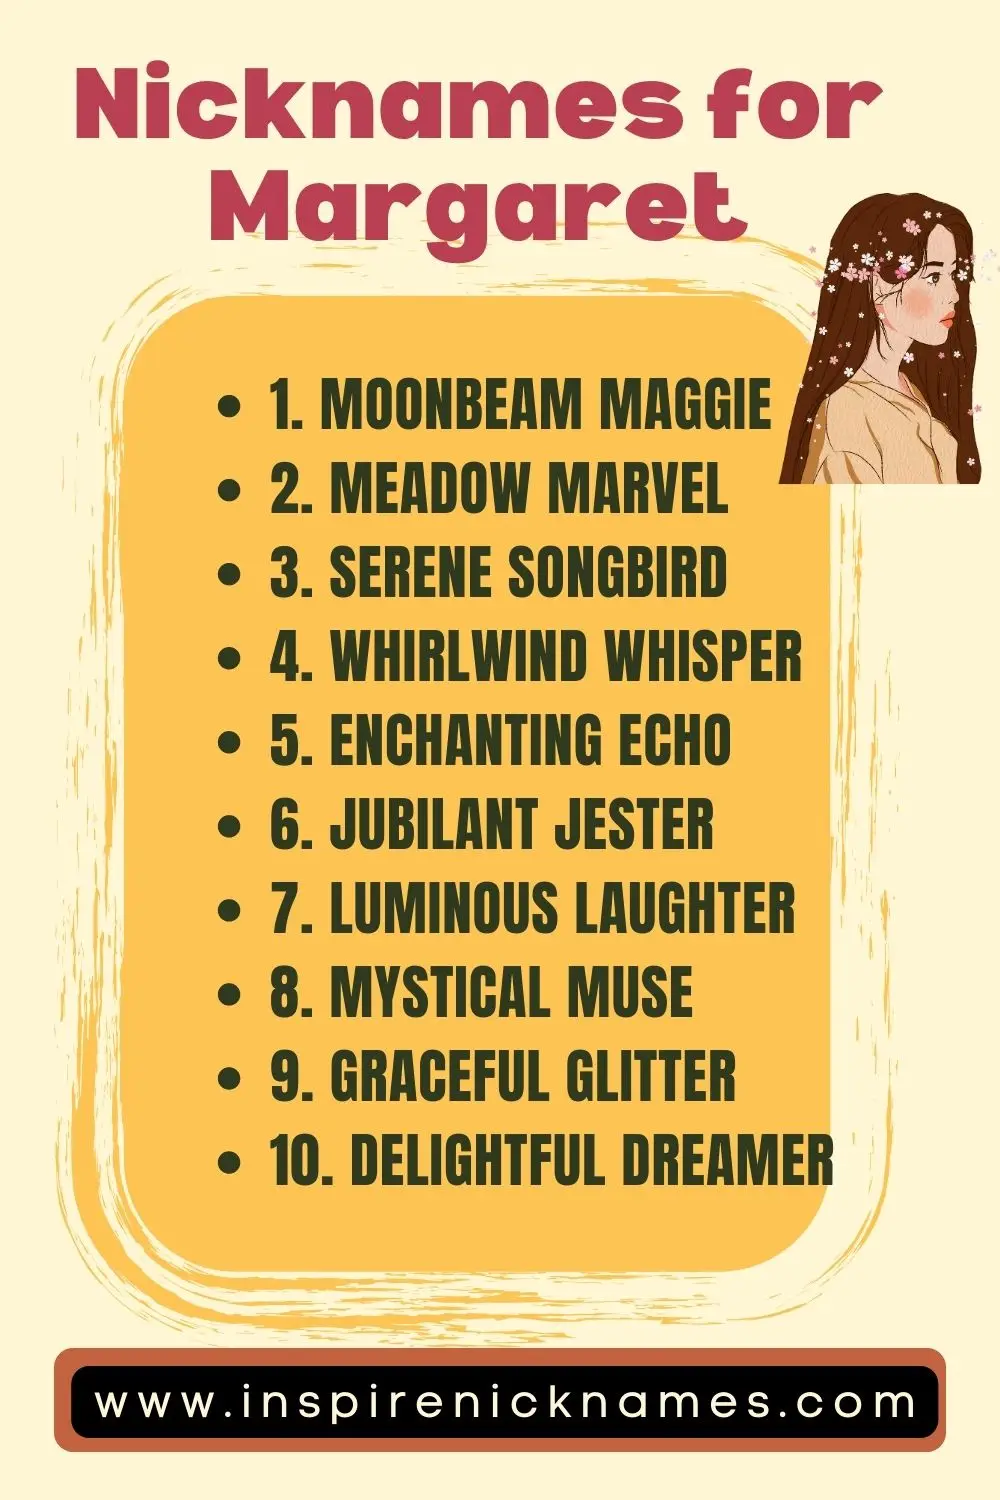 nicknames for Margaret list ideas